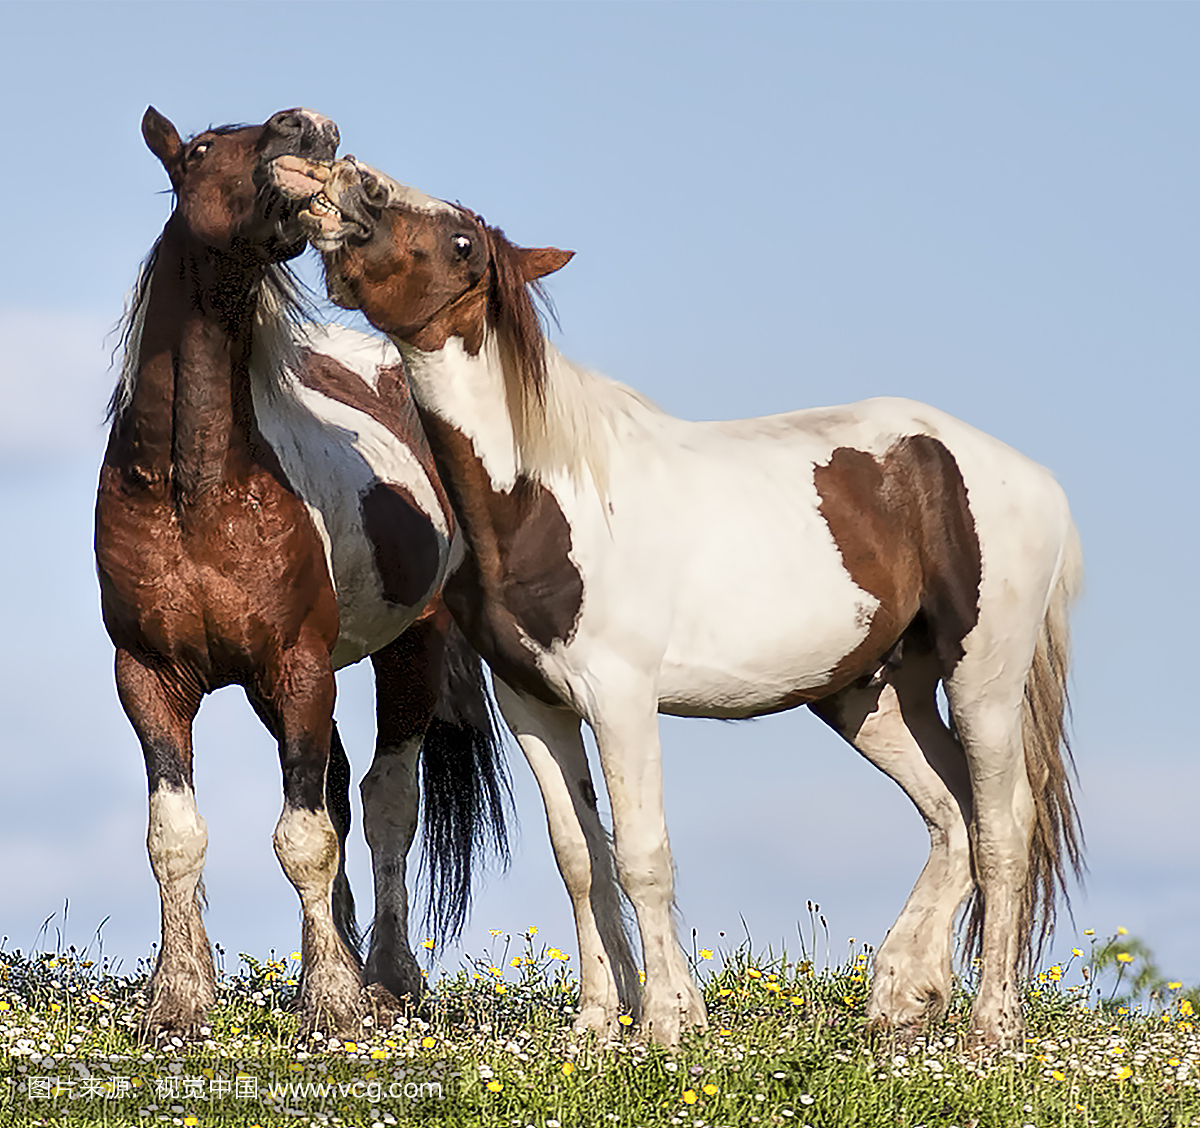 亲吻 - 两匹马相亲